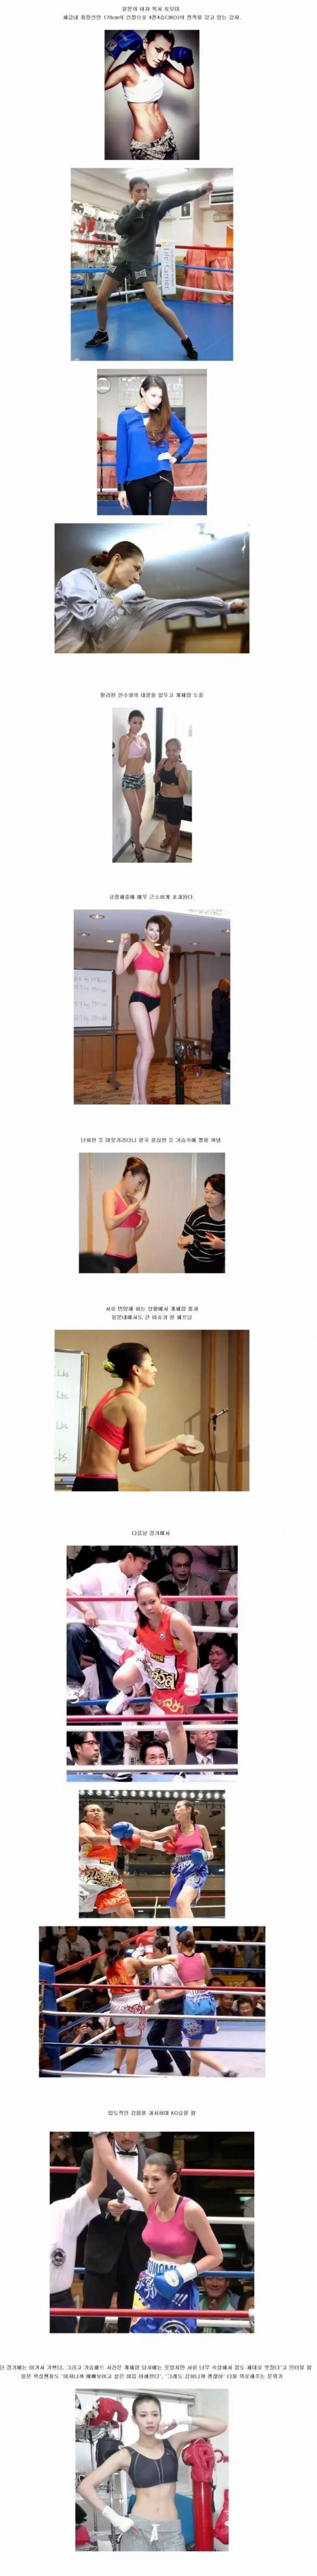 일본 여자복서 체중검사하다 들통